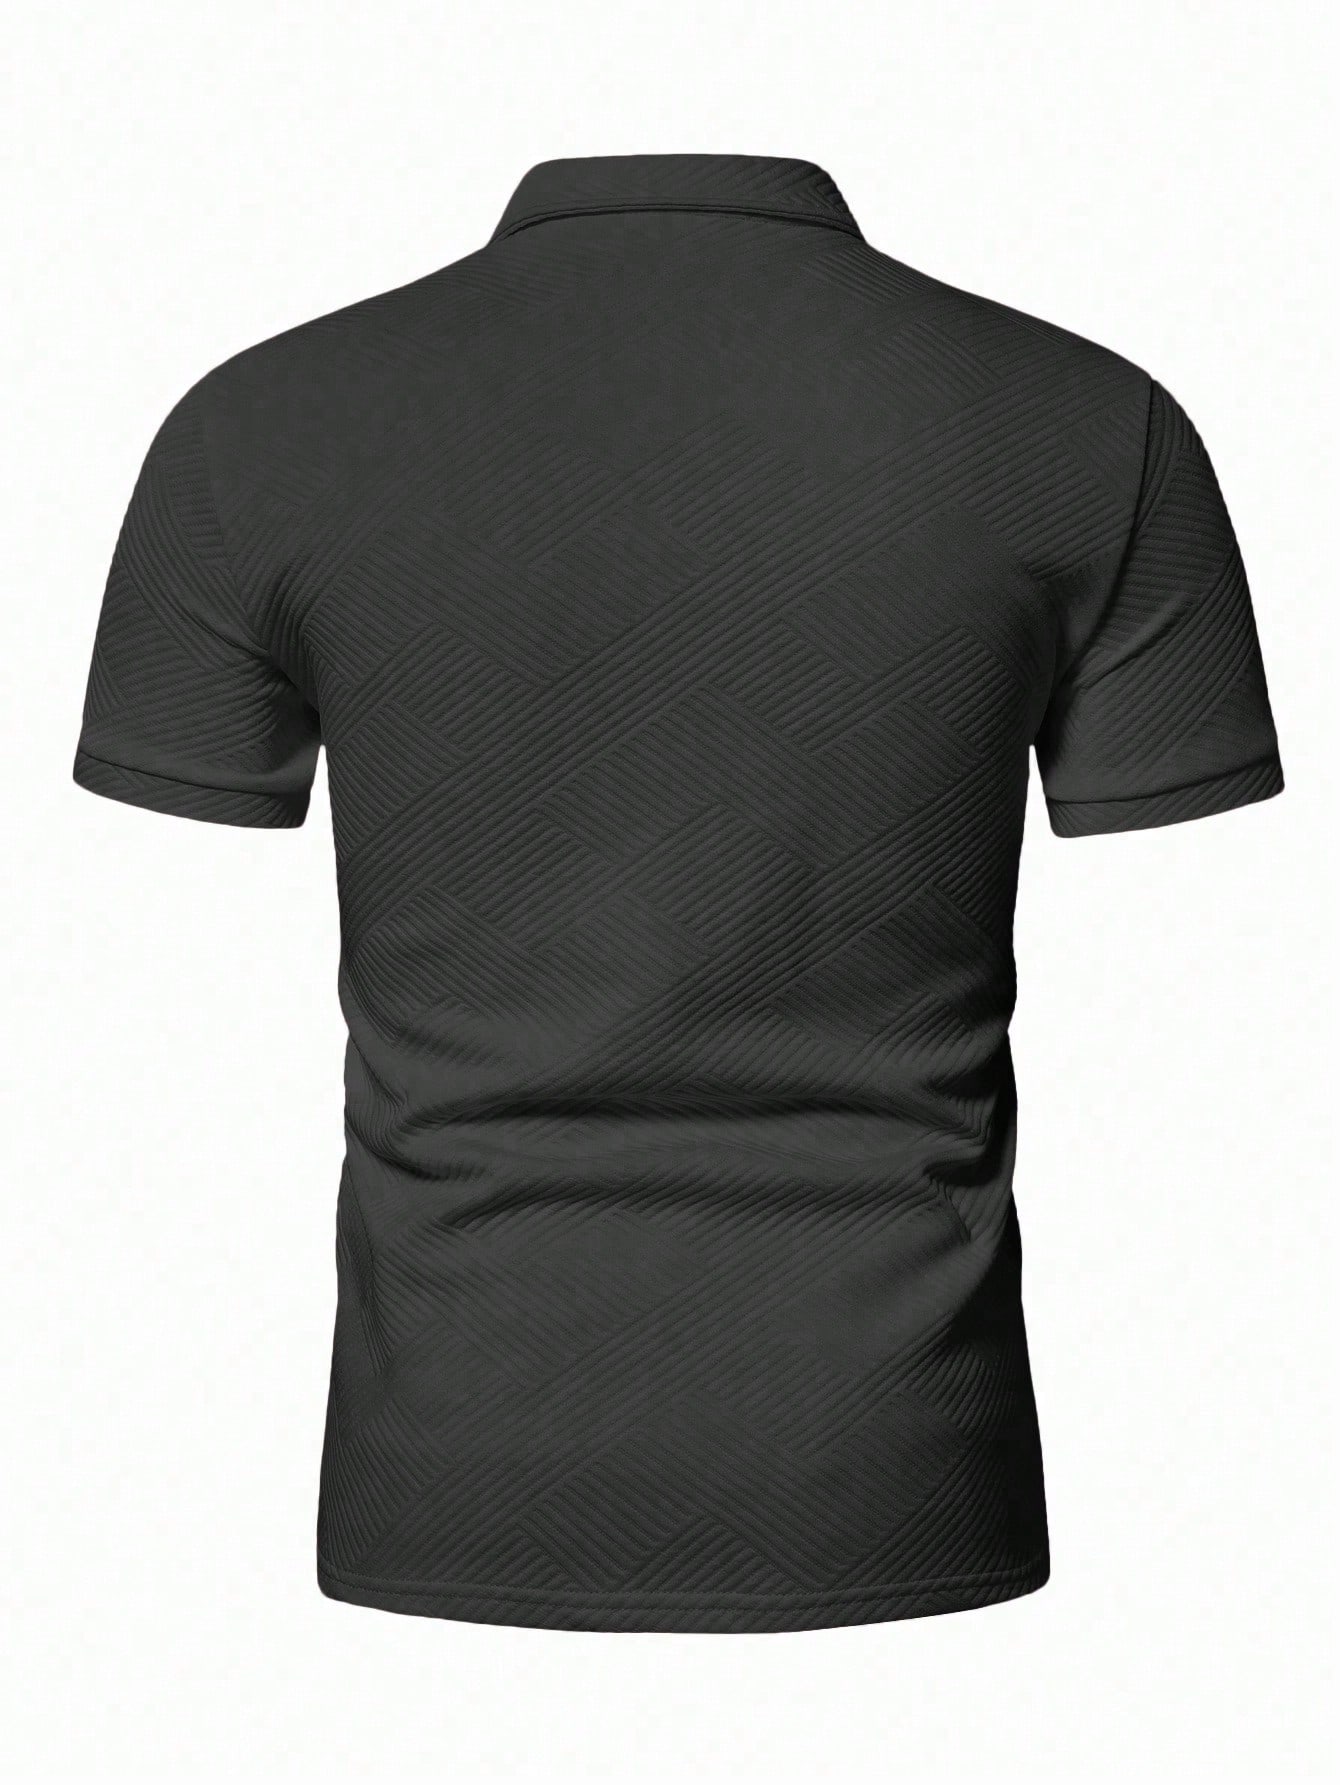 Мужская рубашка-поло с коротким рукавом Manfinity Homme с однотонной текстурой, темно-серый